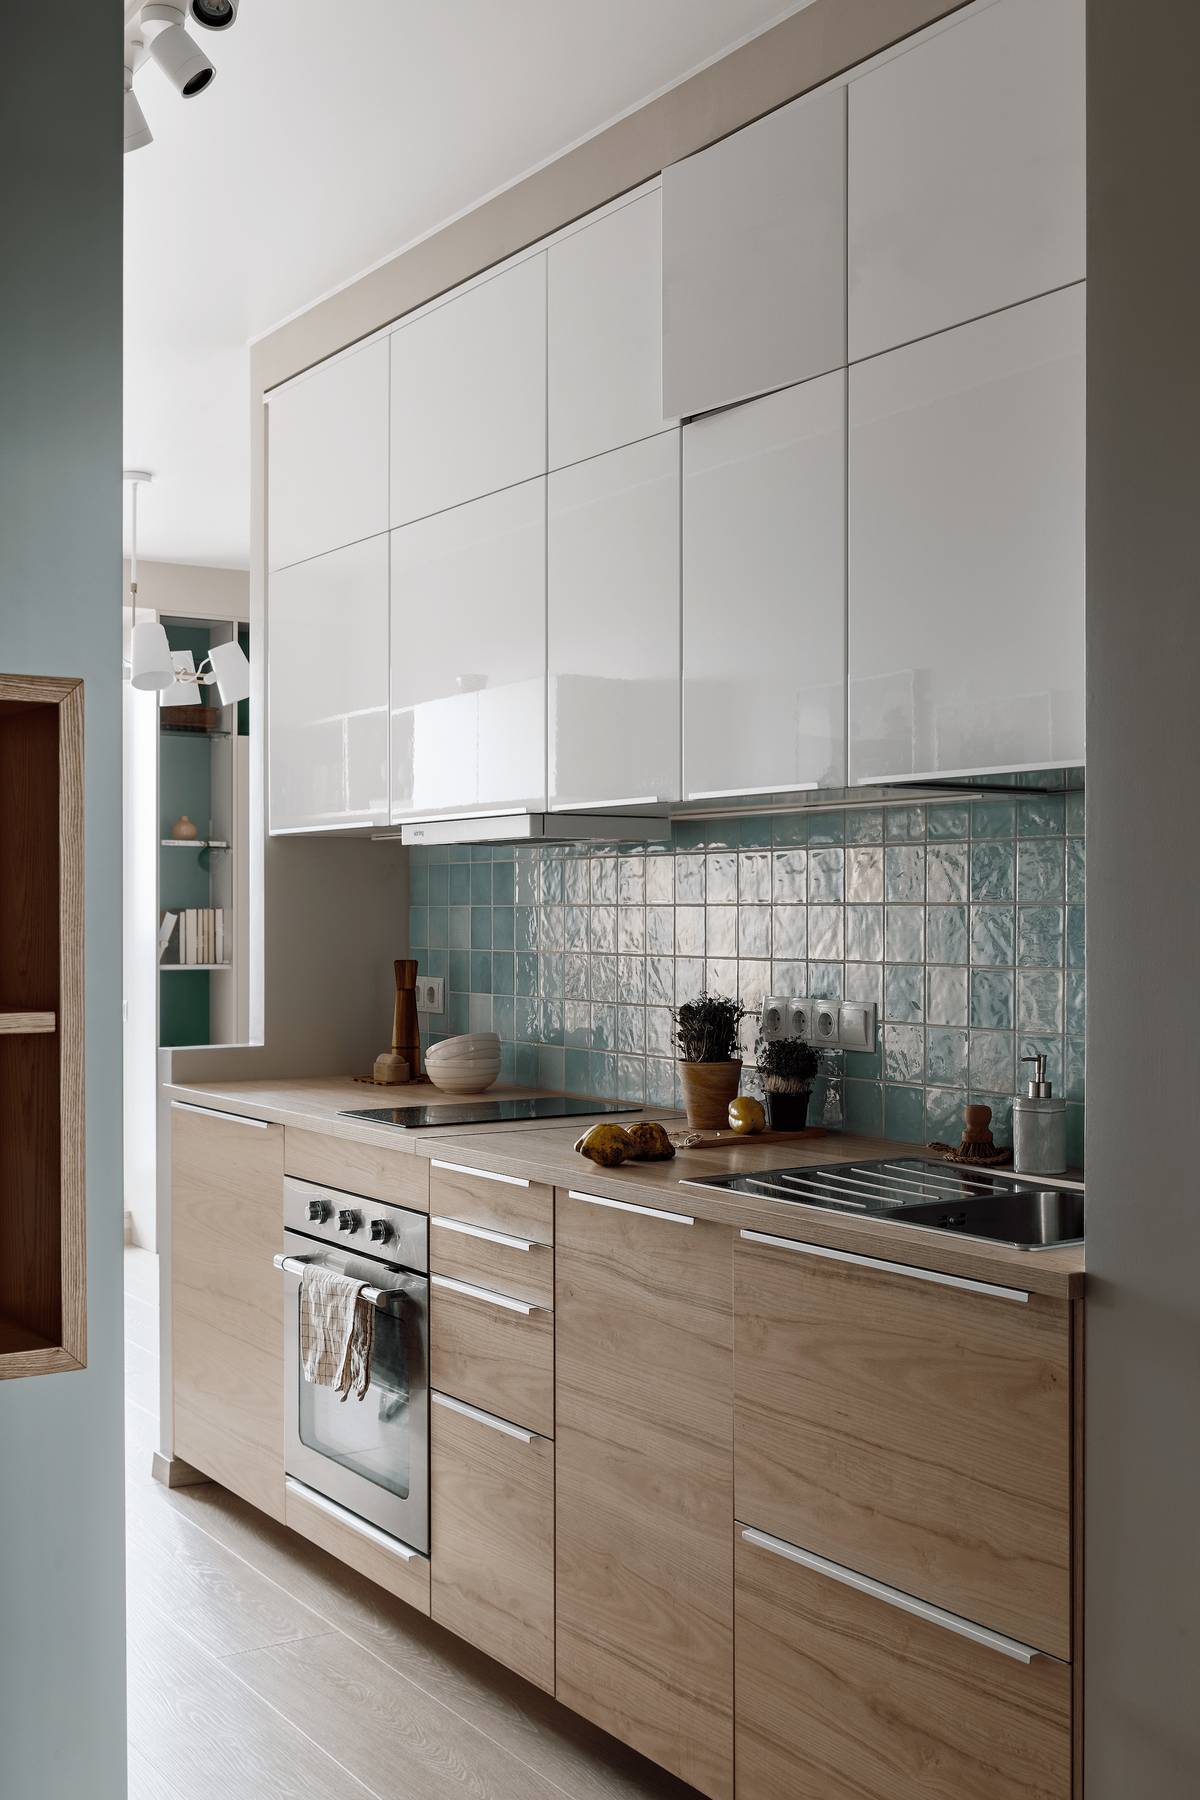 Phòng bếp thiết kế kiểu chữ I nhằm tạo lối đi thông thoáng, hệ tủ bếp trên màu trắng tương phản nhẹ nhàng với tủ bếp dưới bằng gỗ mộc mạc.